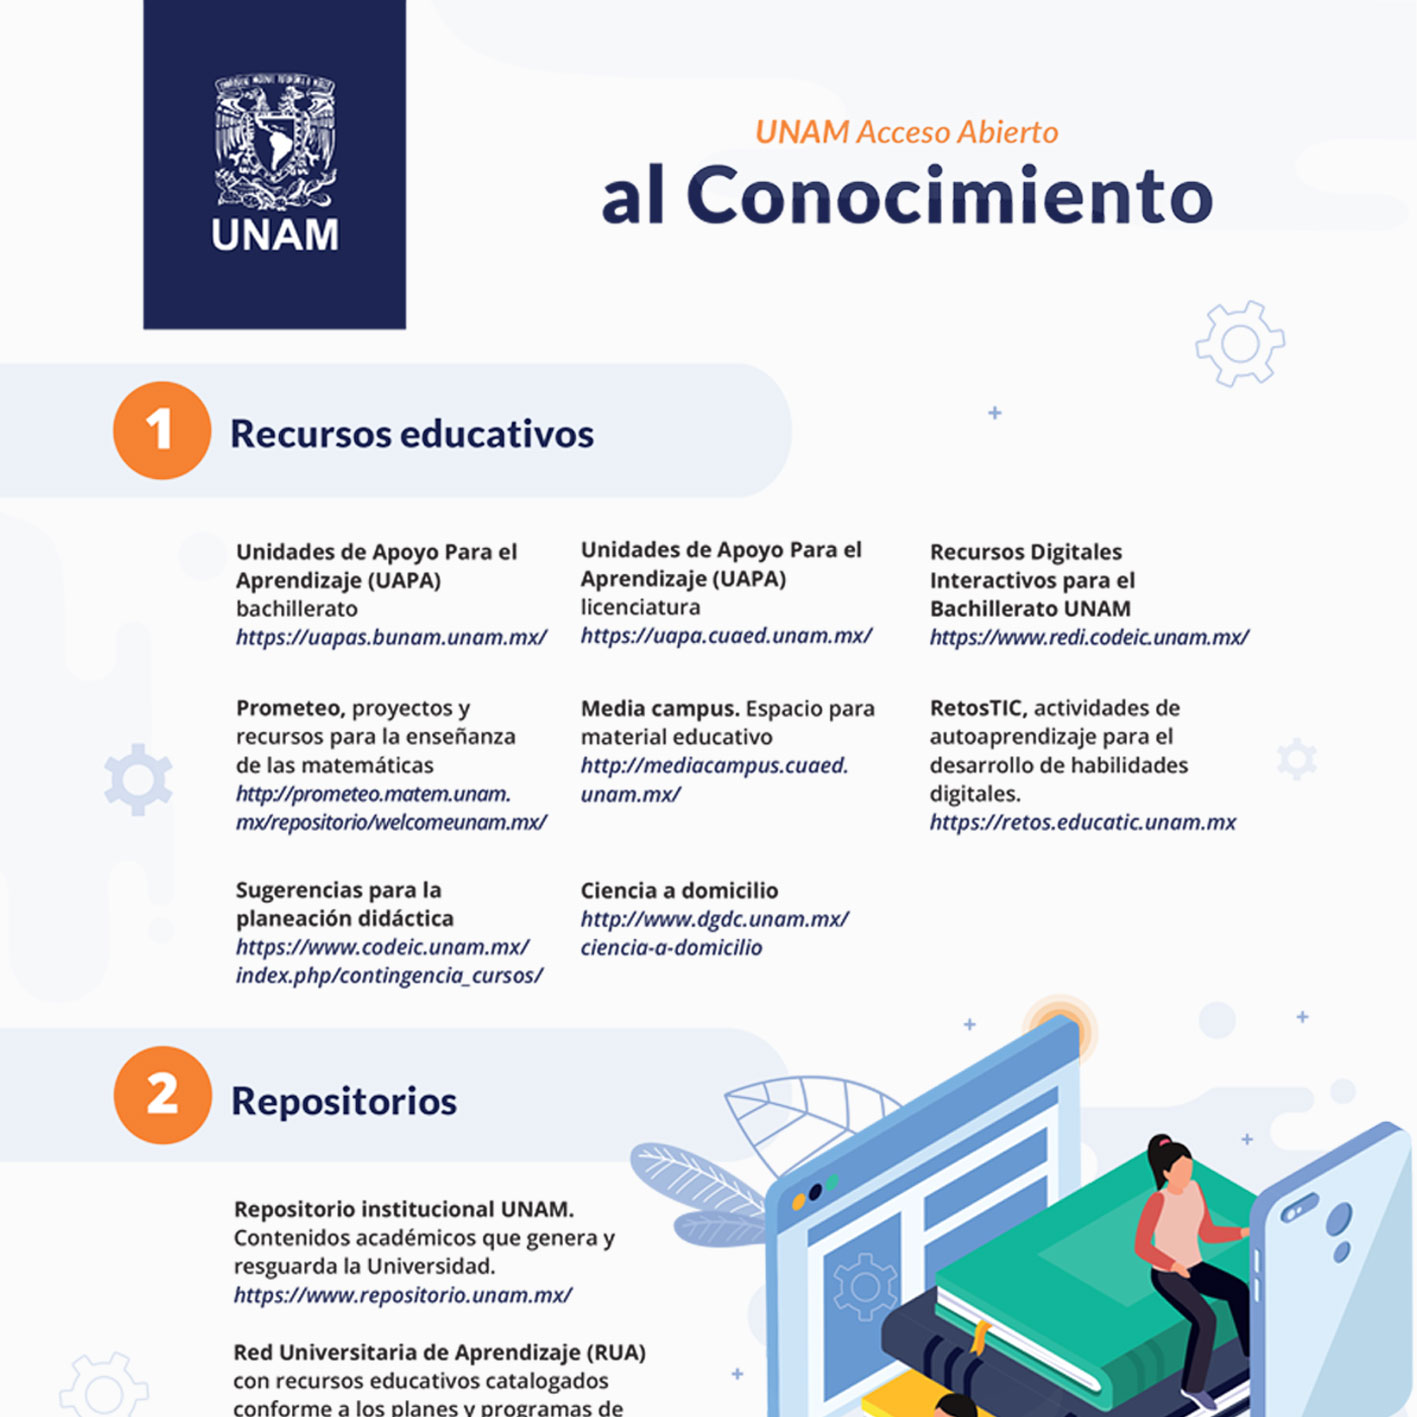 Infografia UNAM Acceso Abierto al Conocimiento